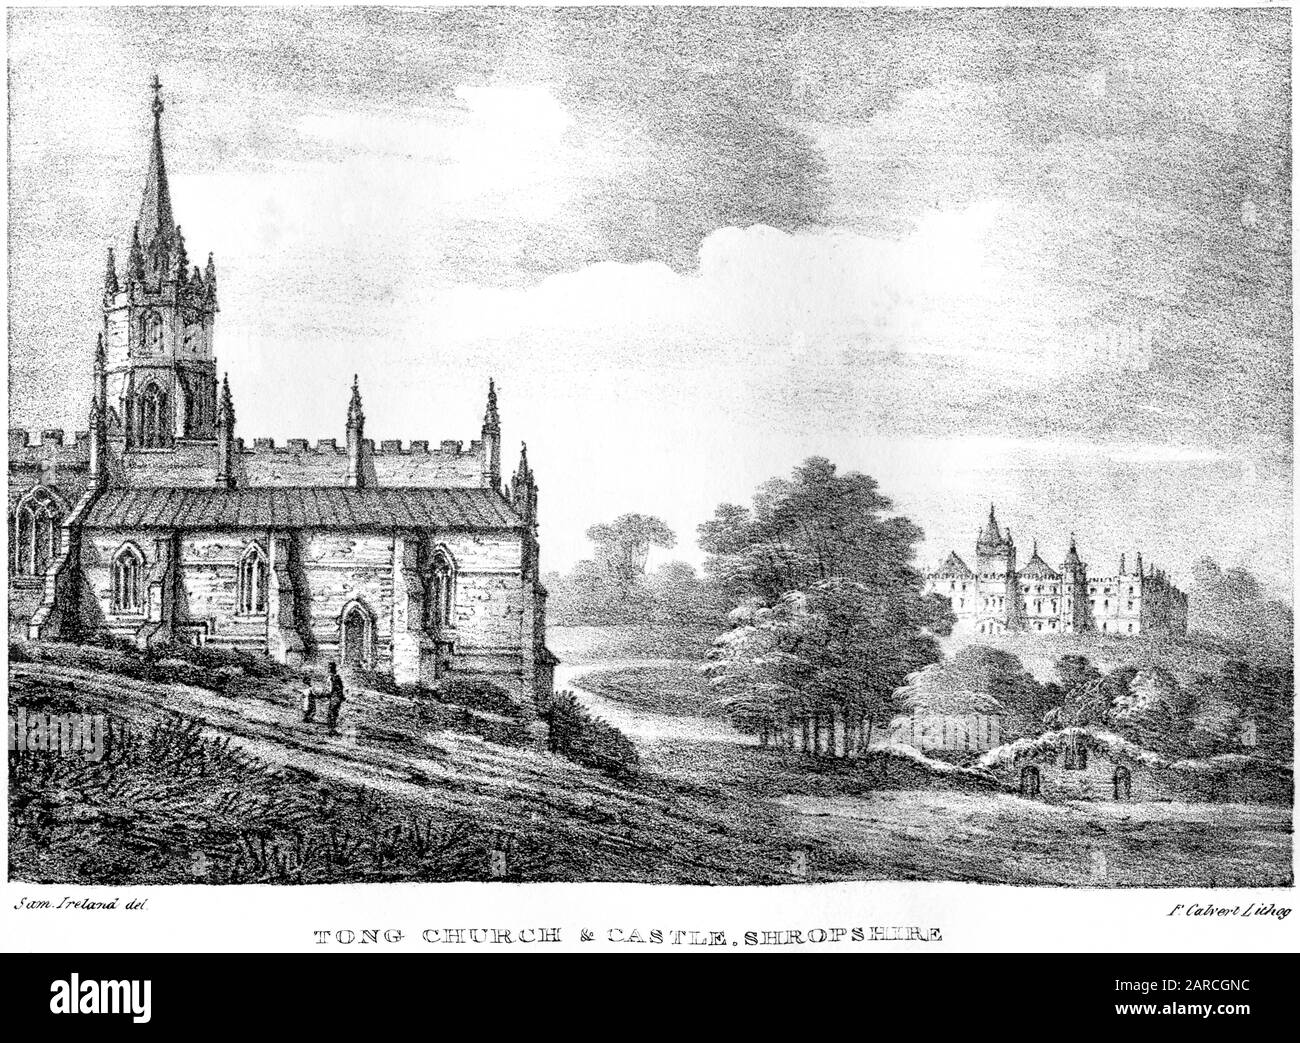 Shropshire, ein Lithograph von Tong Church & Castle, scannte mit hoher Auflösung aus einem Buch, das im Jahr 241 gedruckt wurde. Ich glaube, dass das Urheberrecht frei ist. Stockfoto